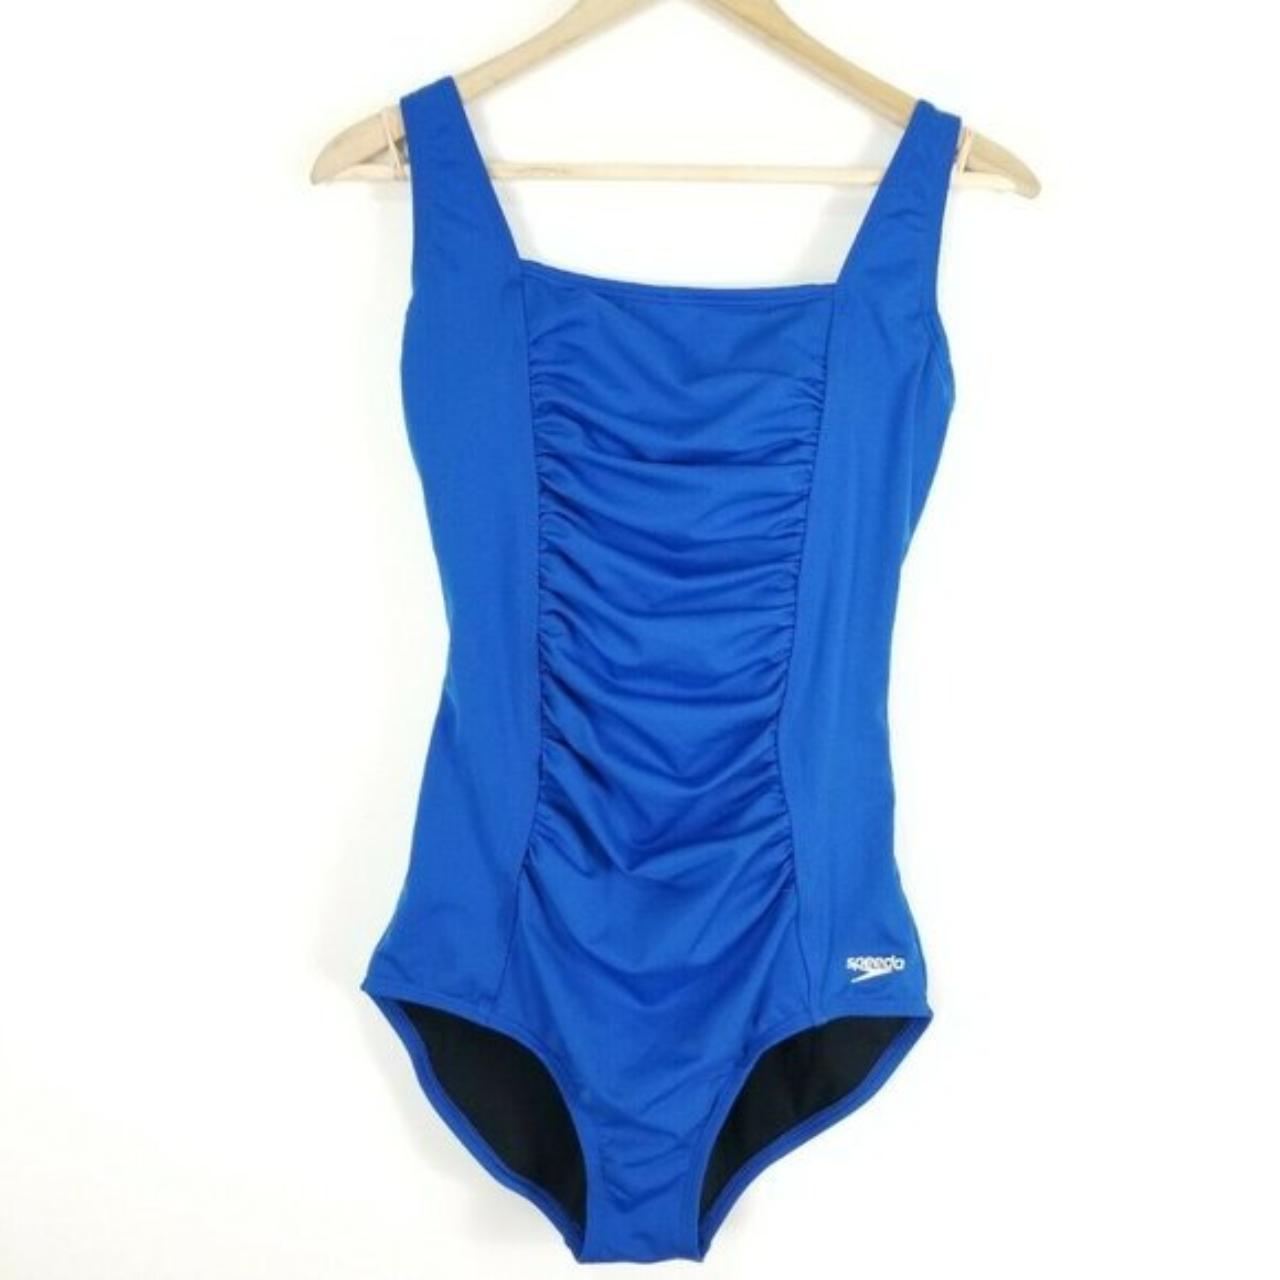 Speedo one piece swimsuit Sz 30 blue bathing suit... - Depop